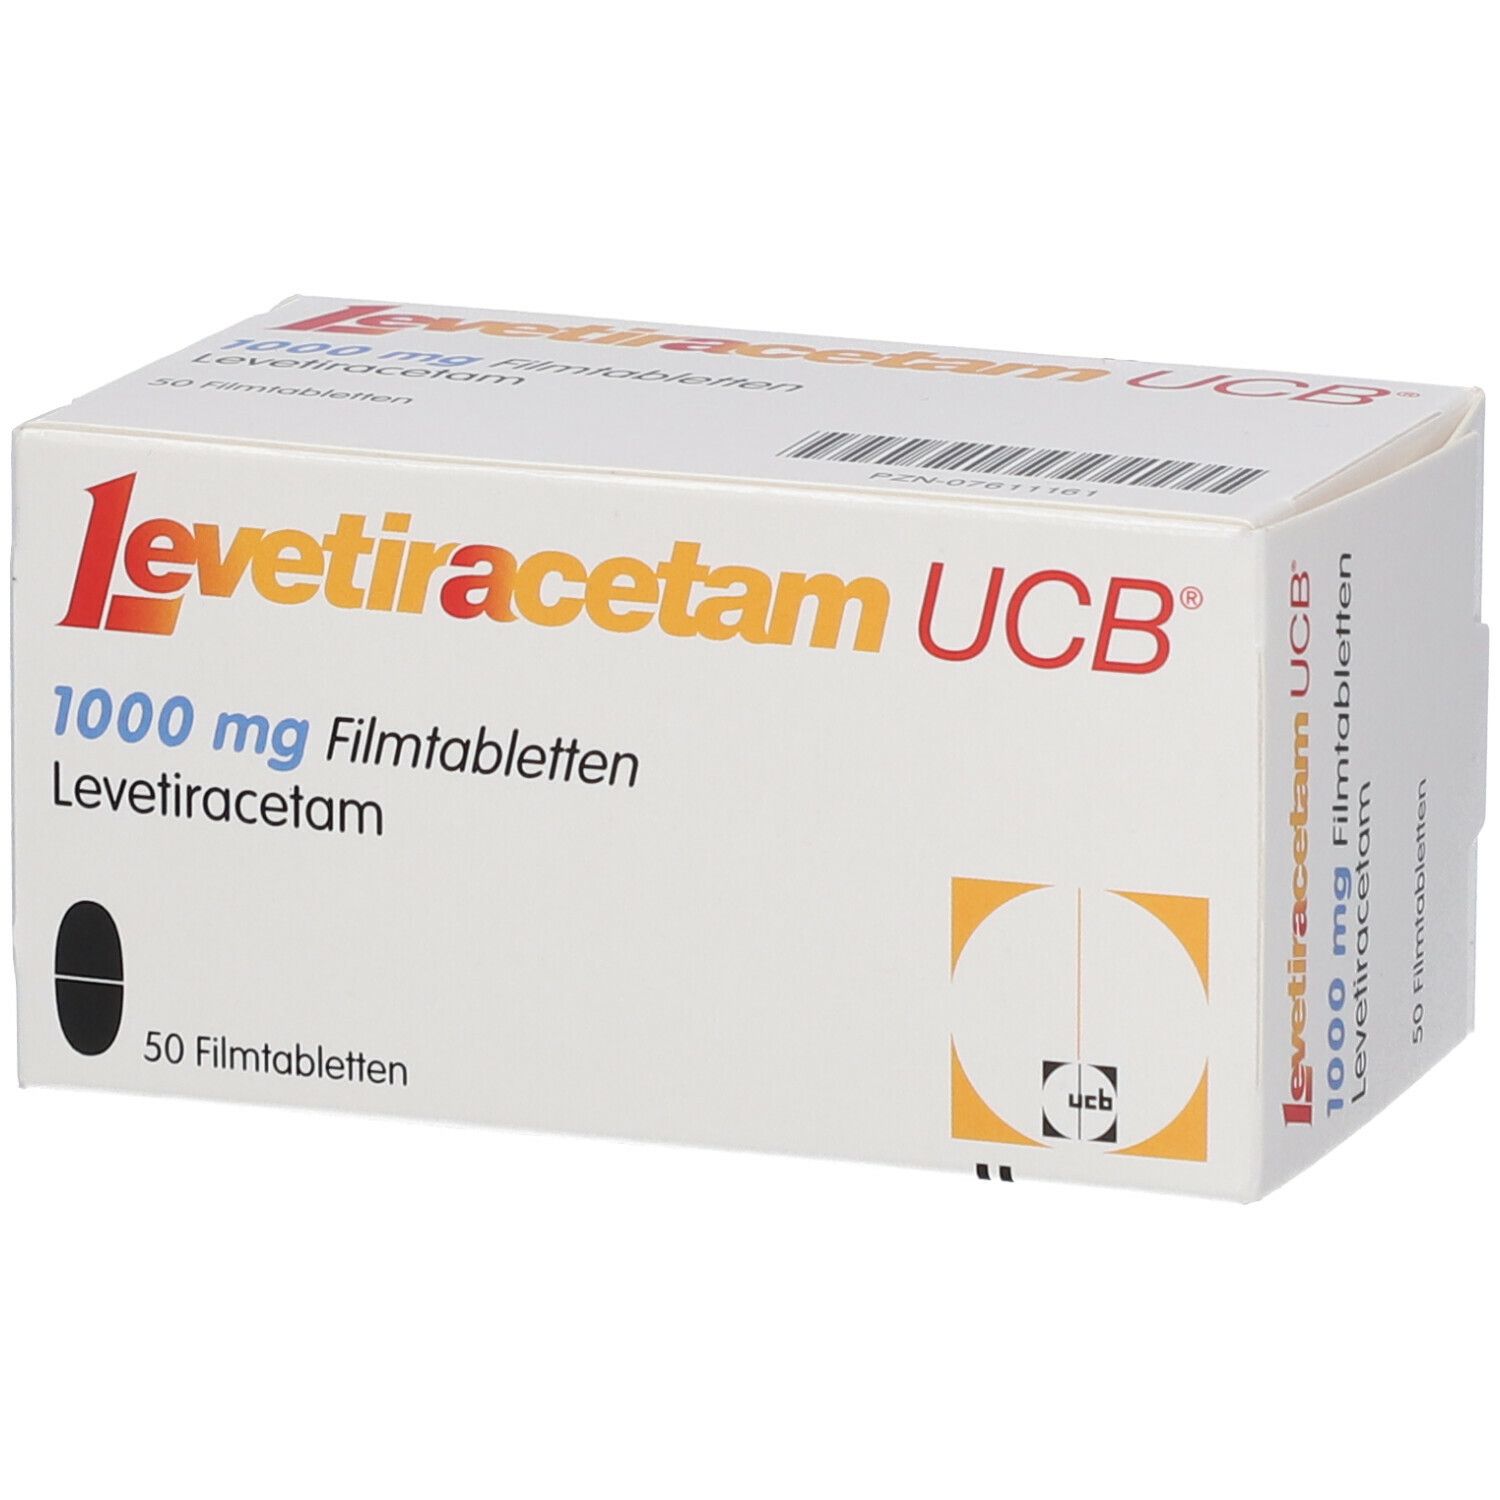 Levetiracetam UCB® 1000 mg